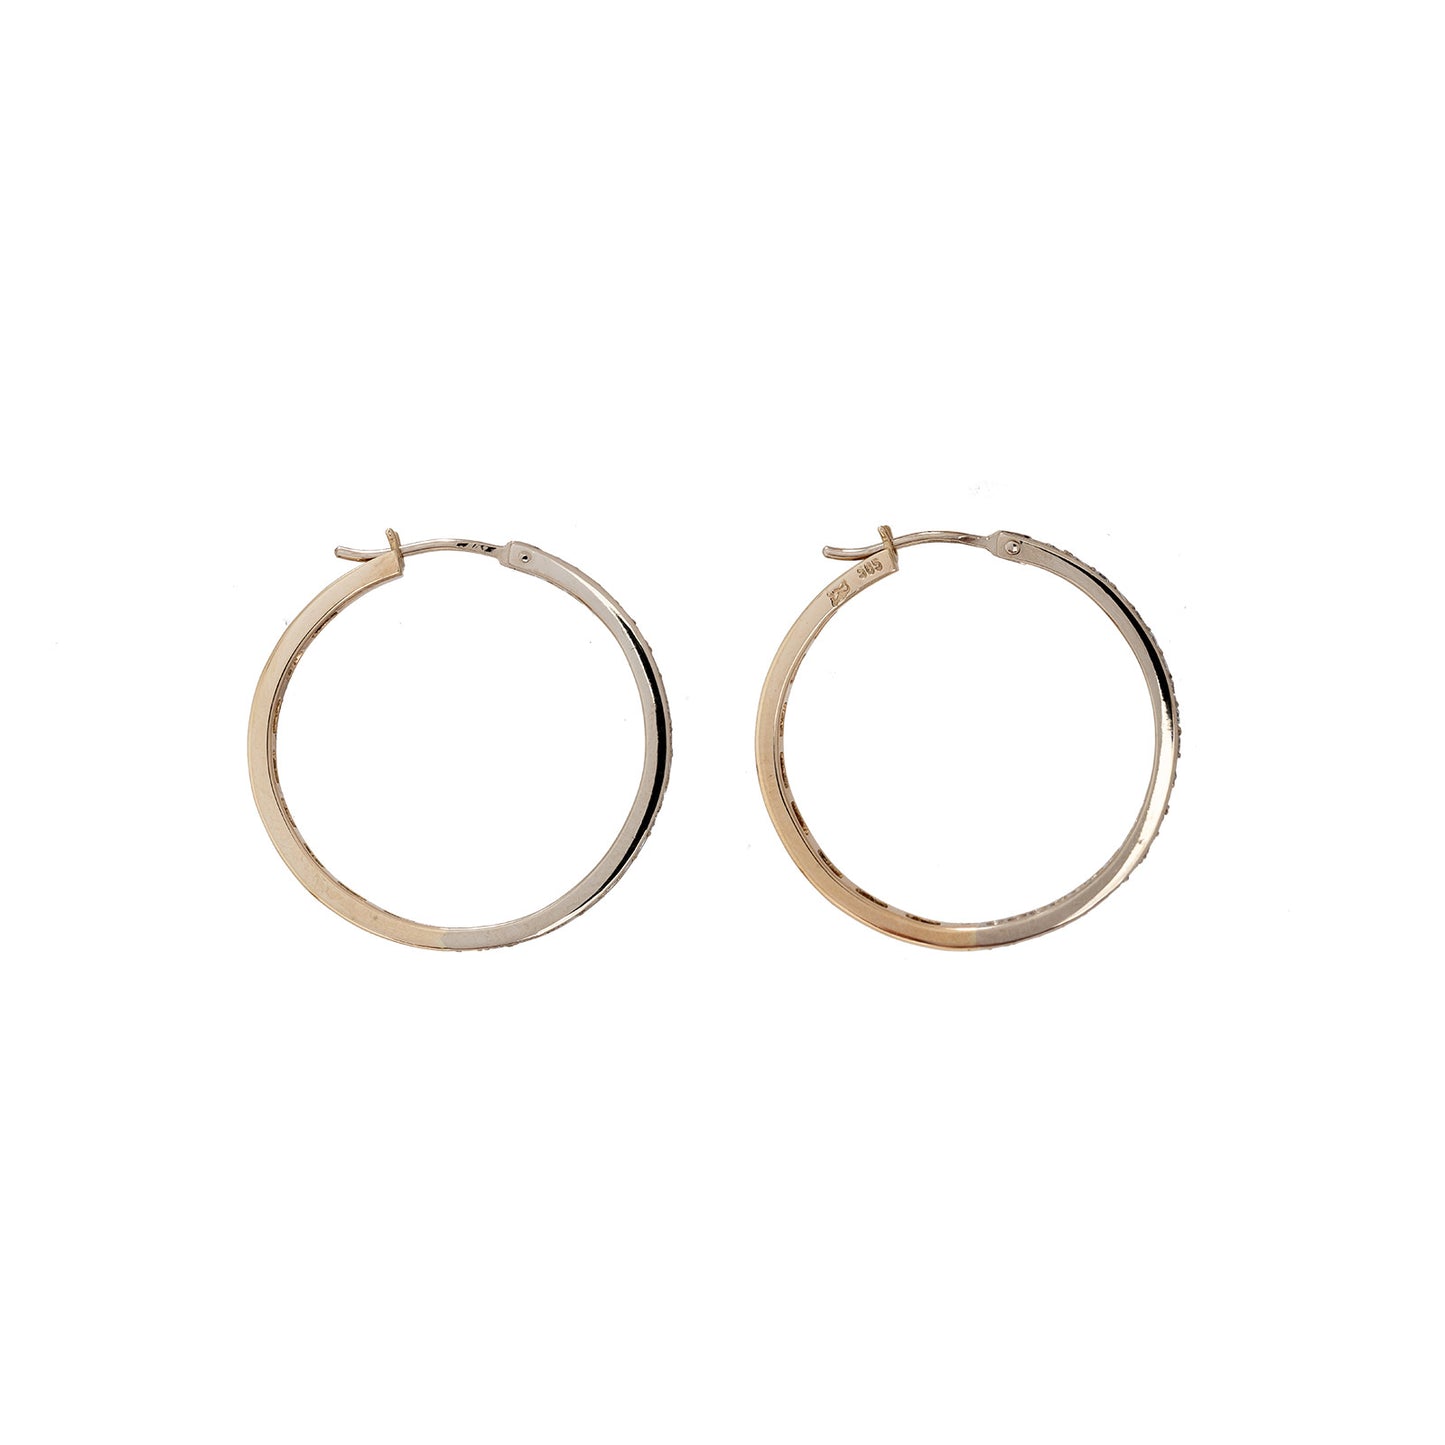 Diamond hoop earrings bail 29mm yellow gold white gold 14K women's jewelry diamond earrings